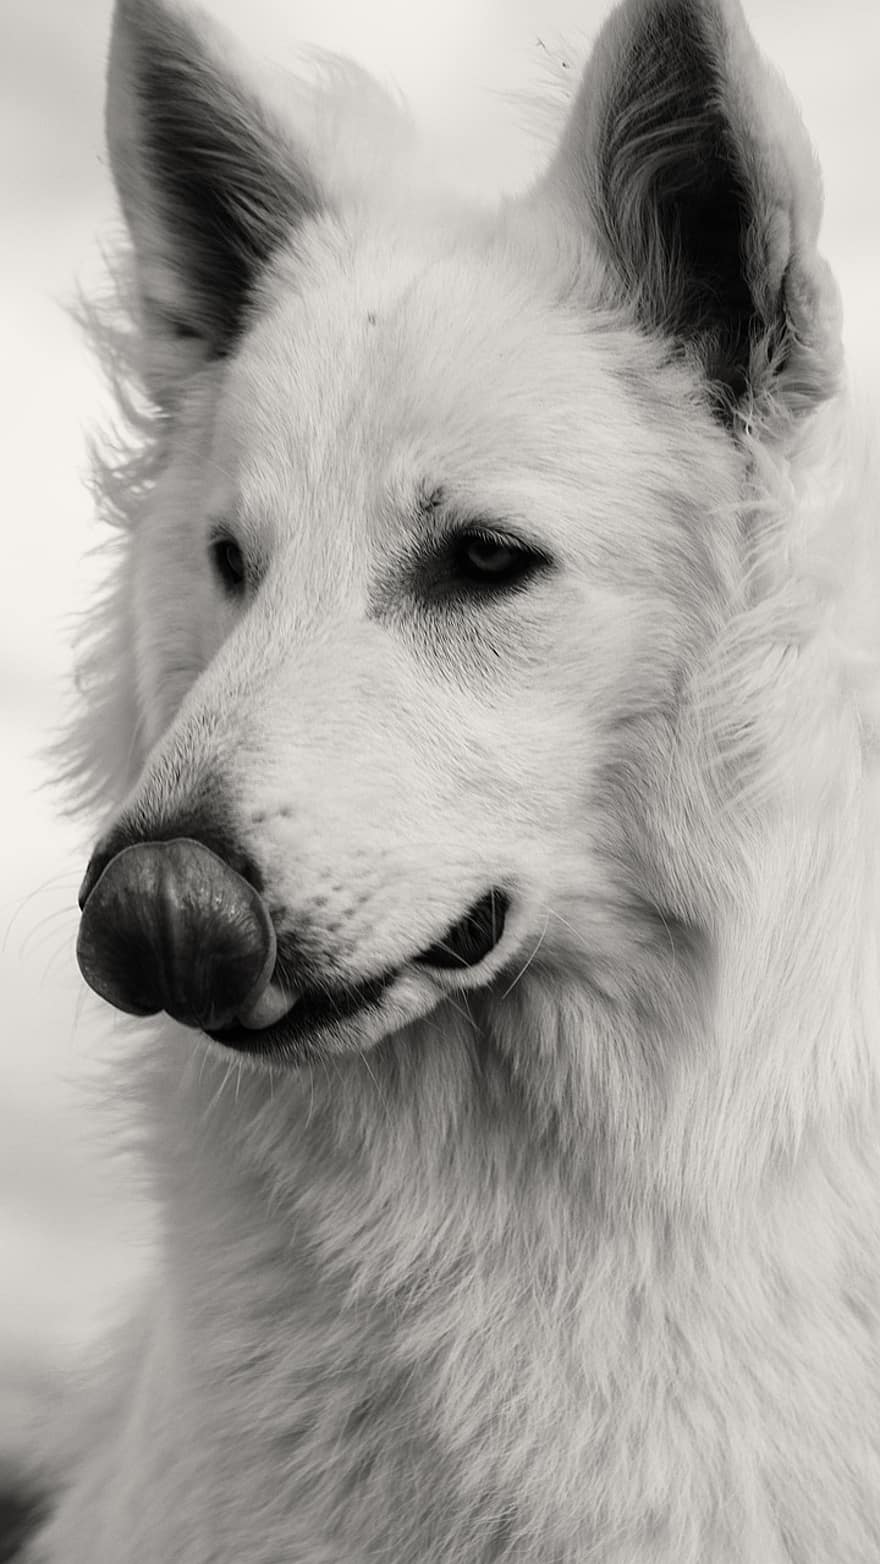 कुत्ता, कुत्ते का, मांसभक्षी, सफेद शेपर्ड, पालतू पशु, घरेलू, प्रकृति, चित्र, काला सफ़ेद, कुत्ते